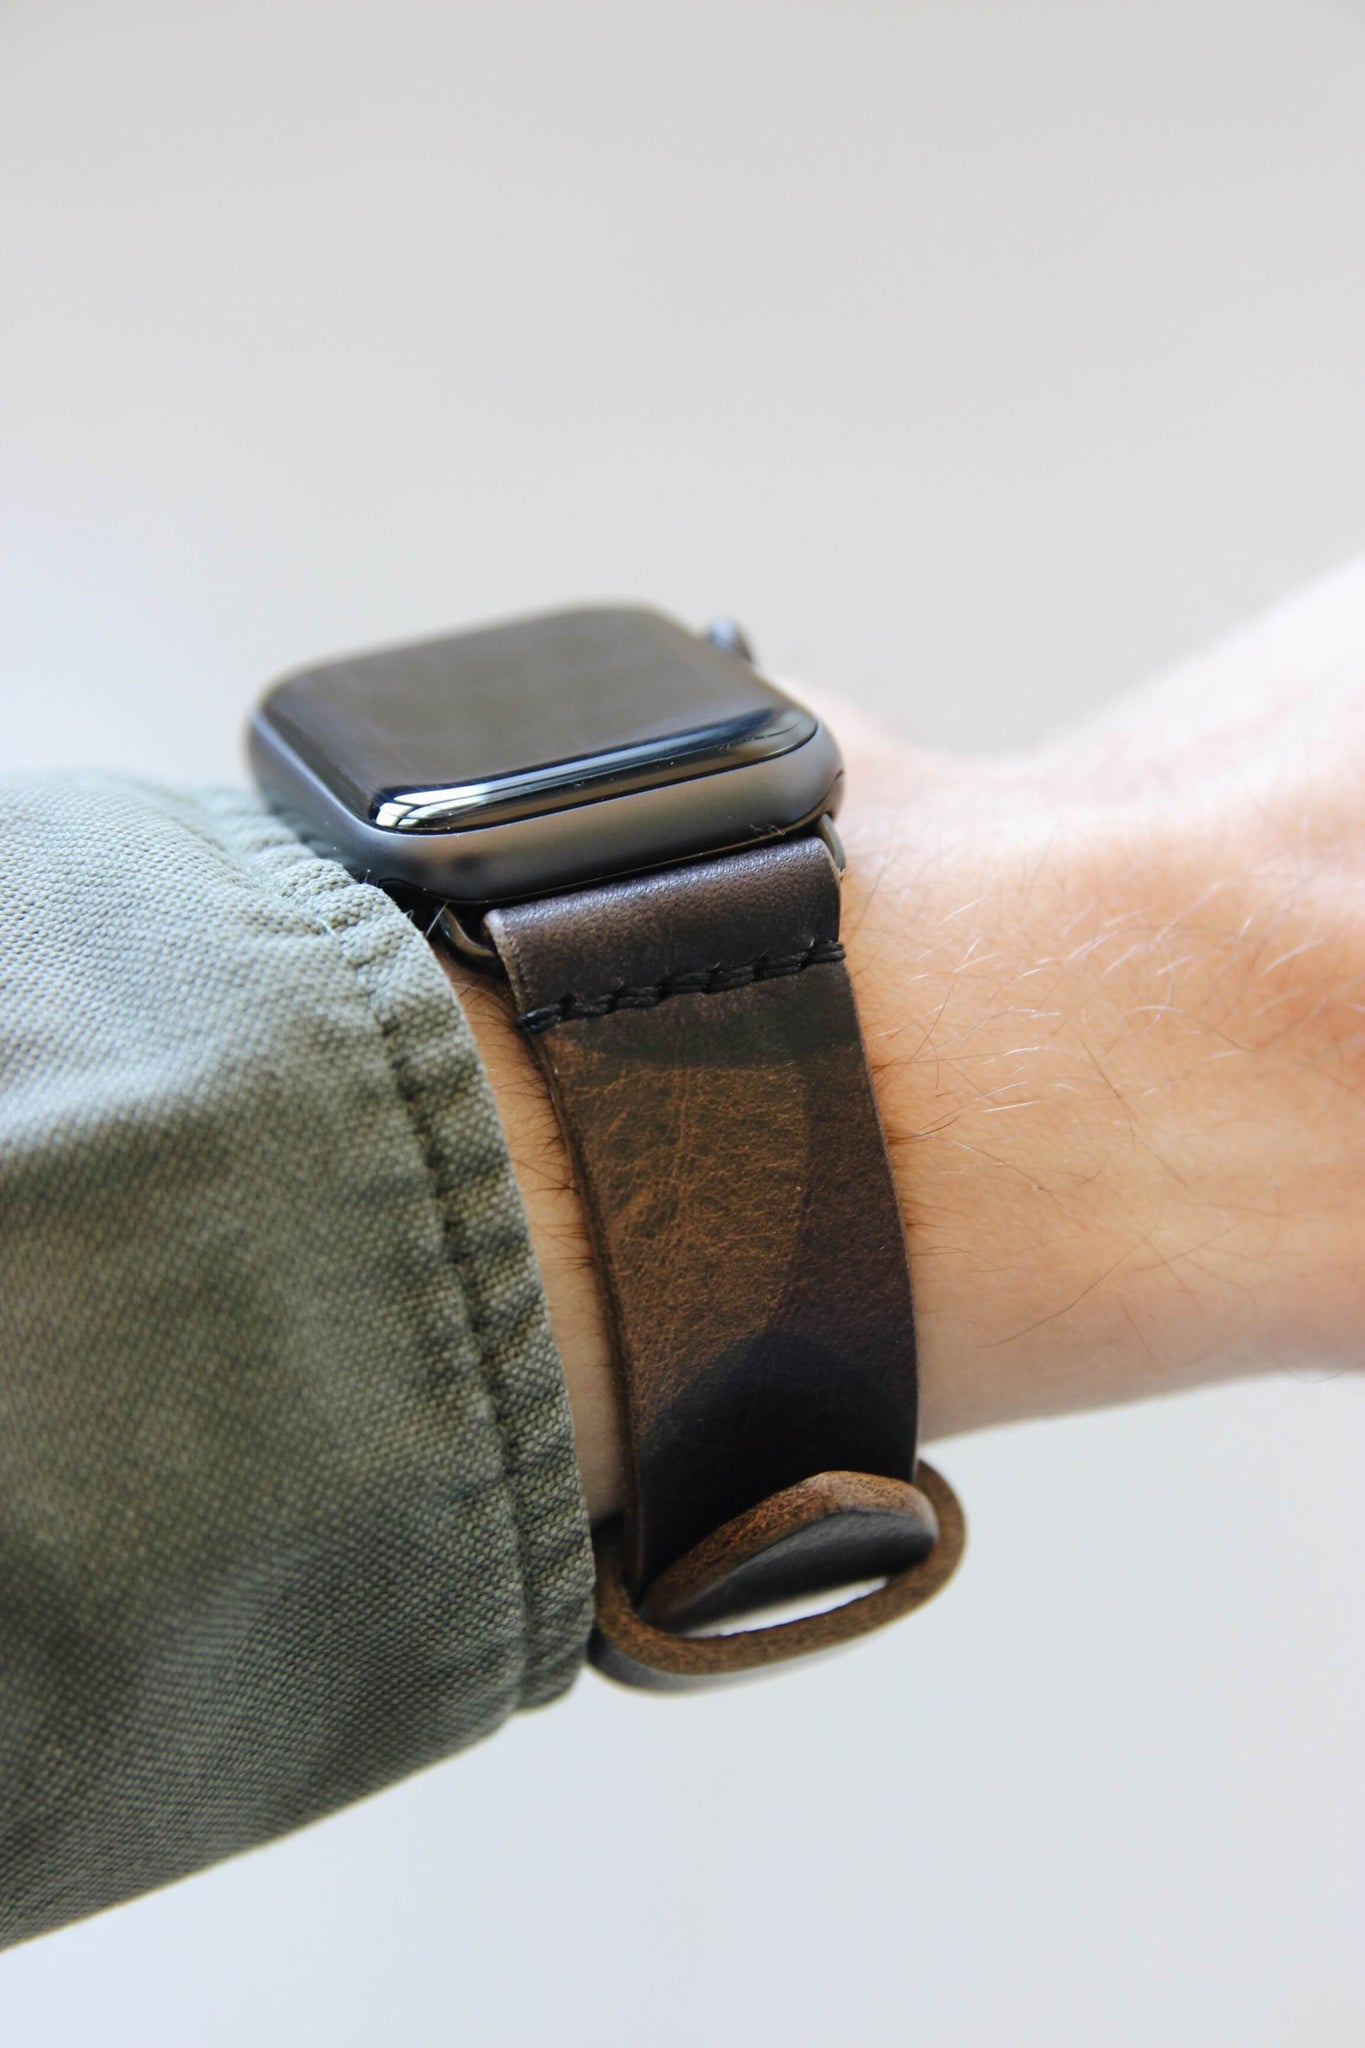 Seitenansicht einer Apple Watch am Handgelenk mit einem Lederband in Camouflage.